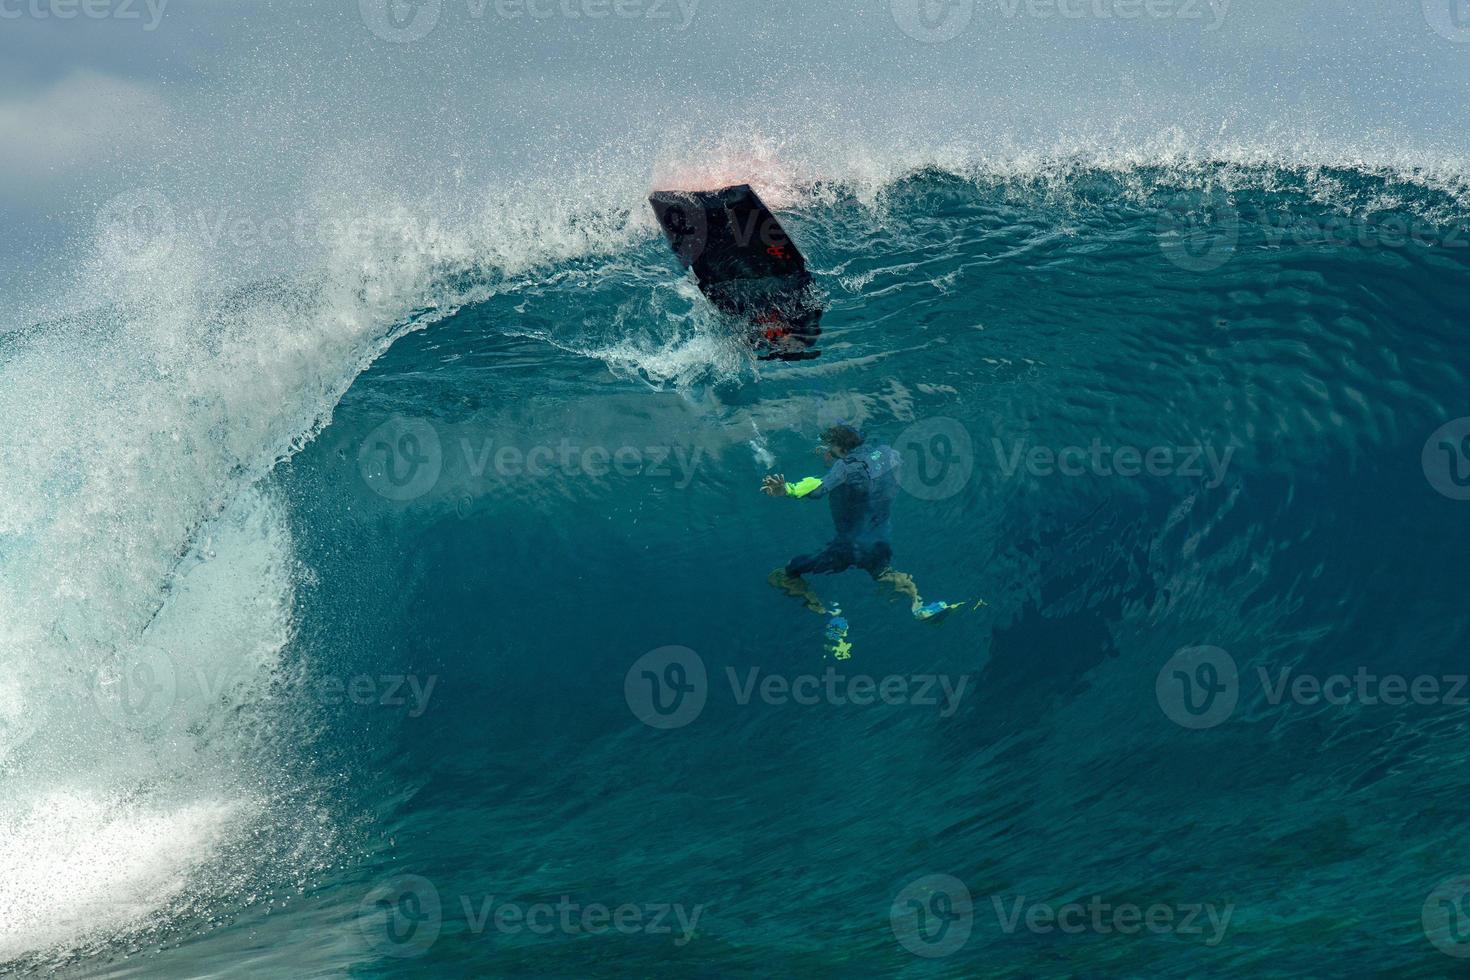 surfeur à l'intérieur vague tube dans Polynésie photo